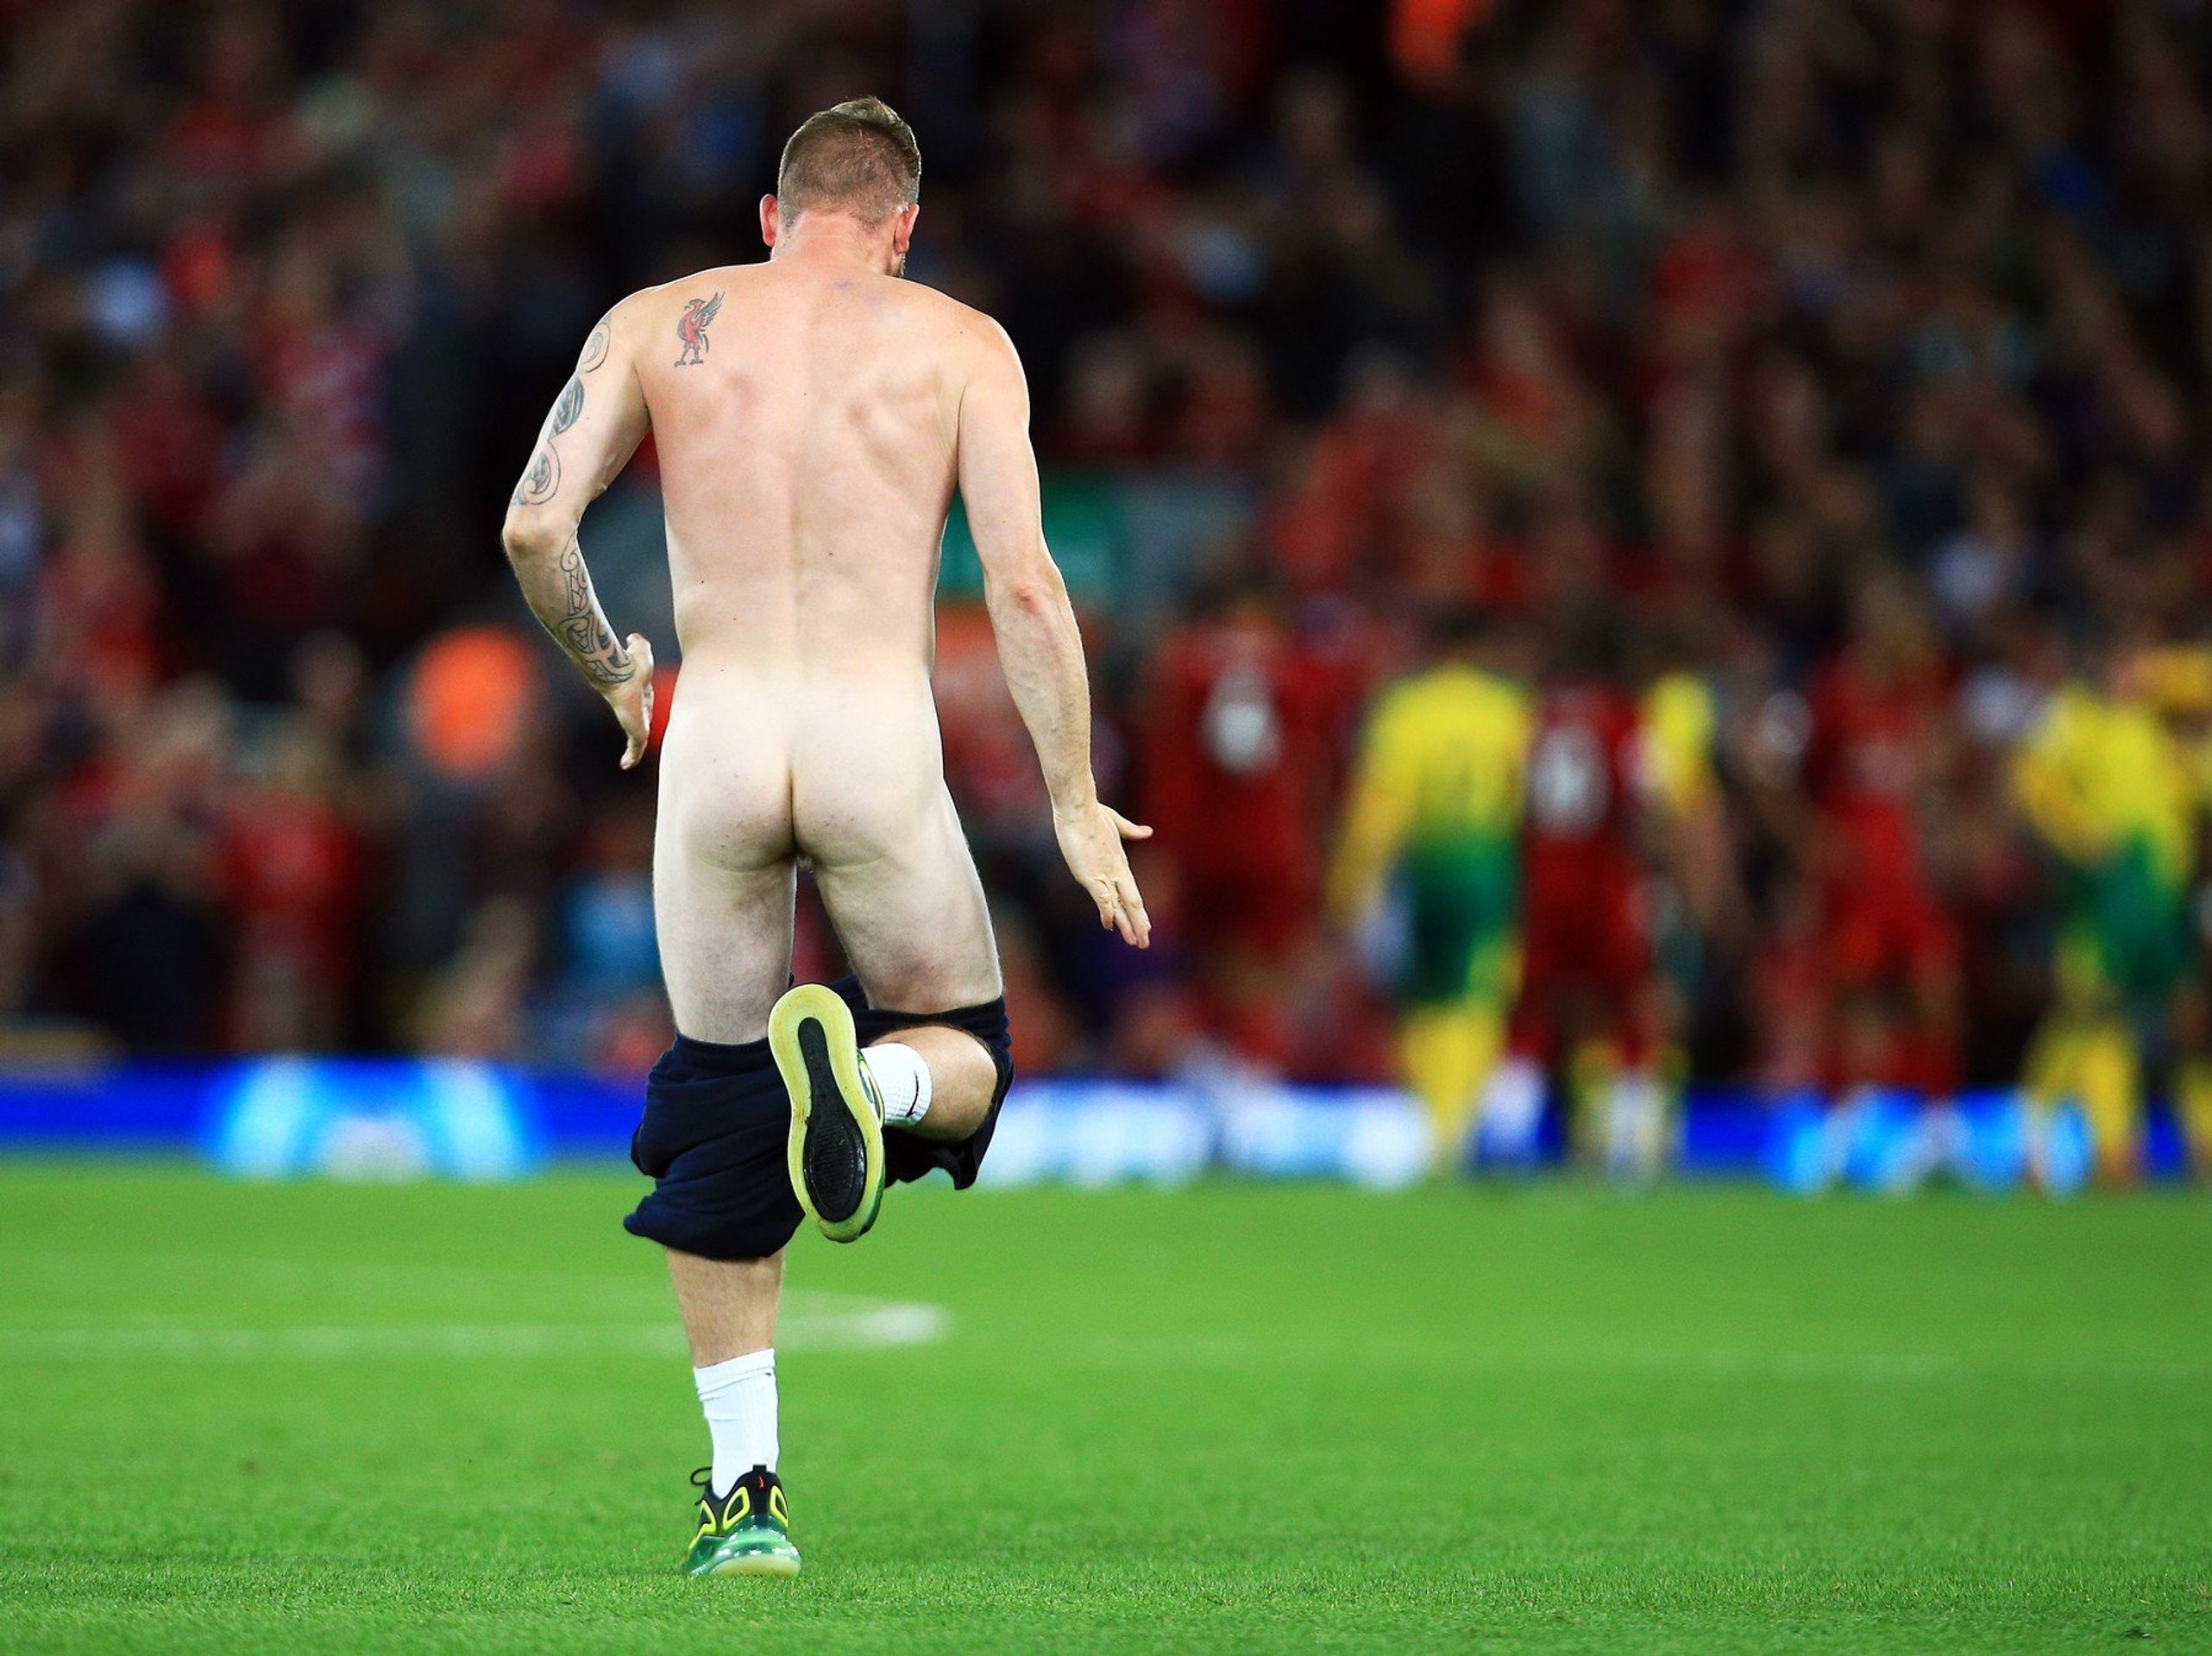 Neznámý muž vběhl na hřiště téměř nahý - Galerie: Neznámý muž přerušil zápas Liverpoolu s Norwichem (1/6)